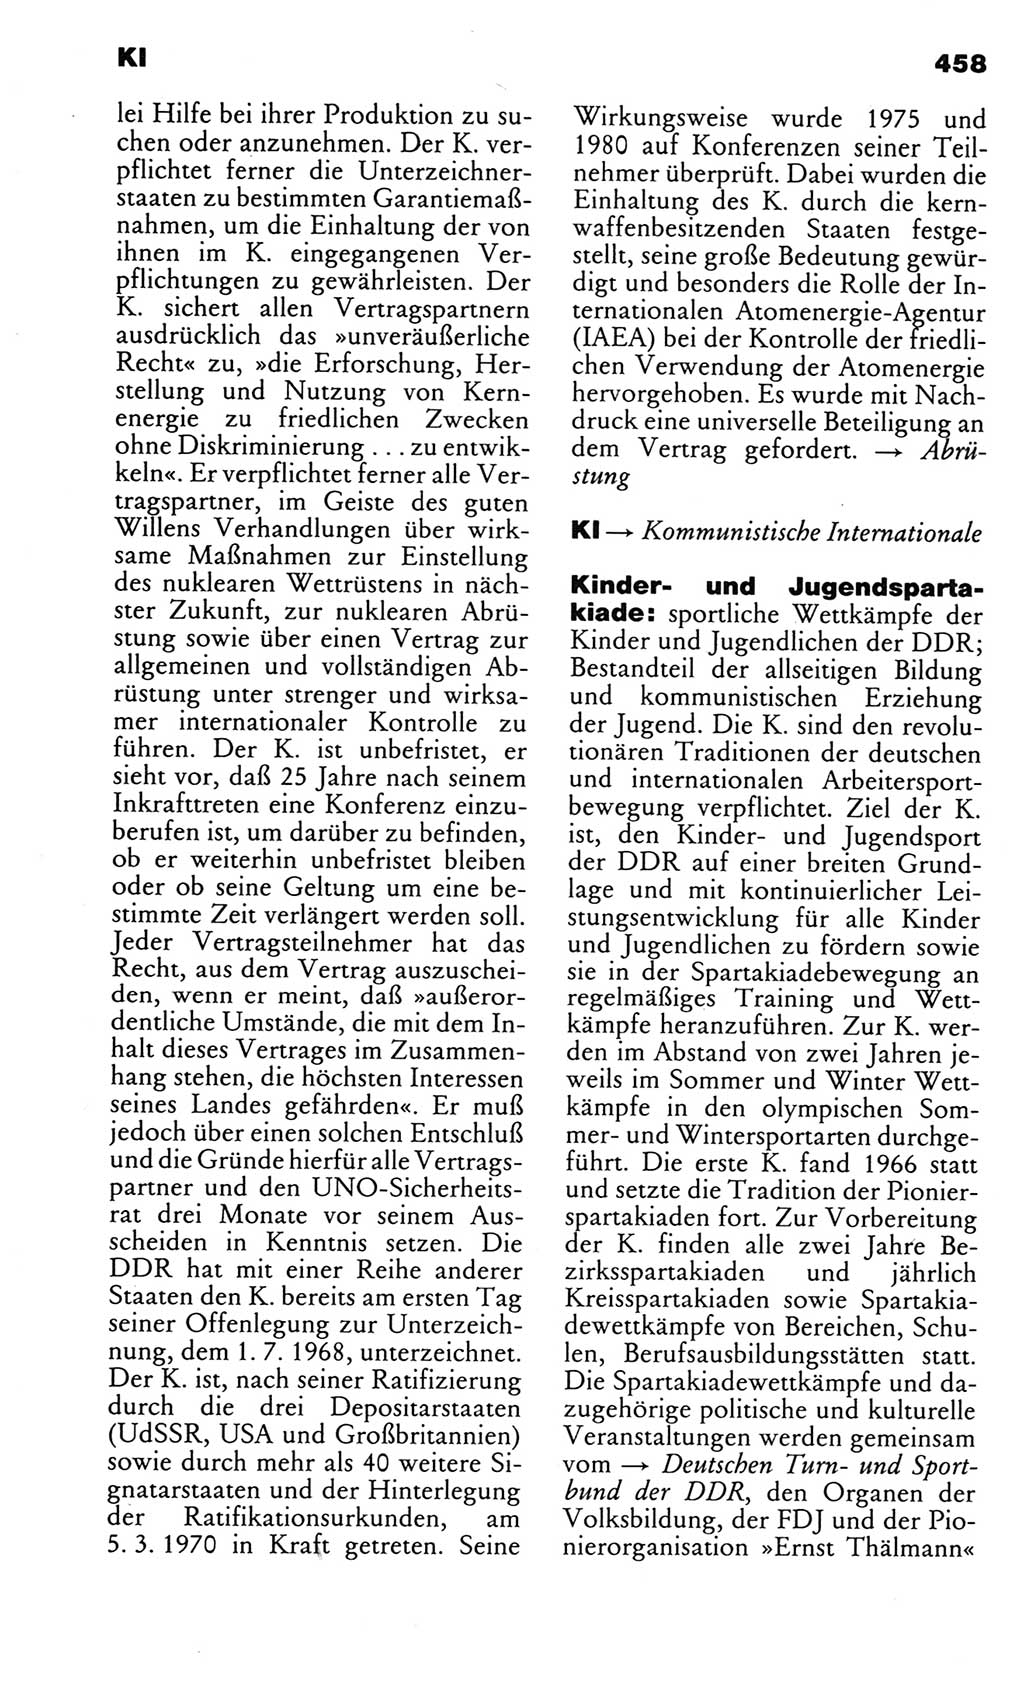 Kleines politisches Wörterbuch [Deutsche Demokratische Republik (DDR)] 1983, Seite 458 (Kl. pol. Wb. DDR 1983, S. 458)